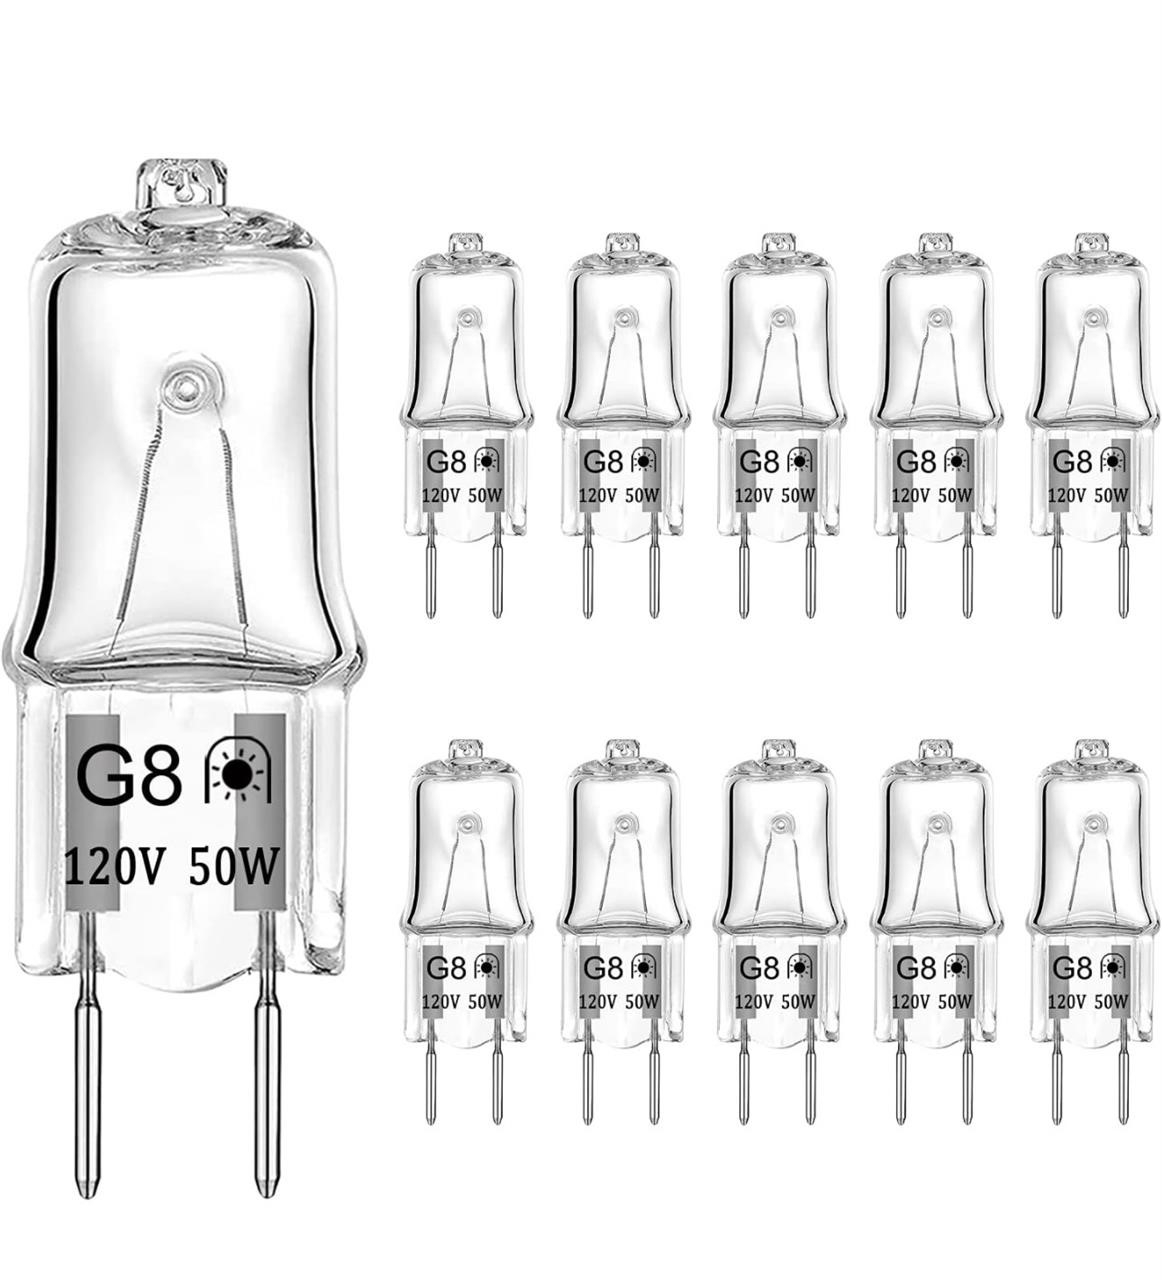 ($29) G8 Halogen Light Bulbs 50W 120V G8